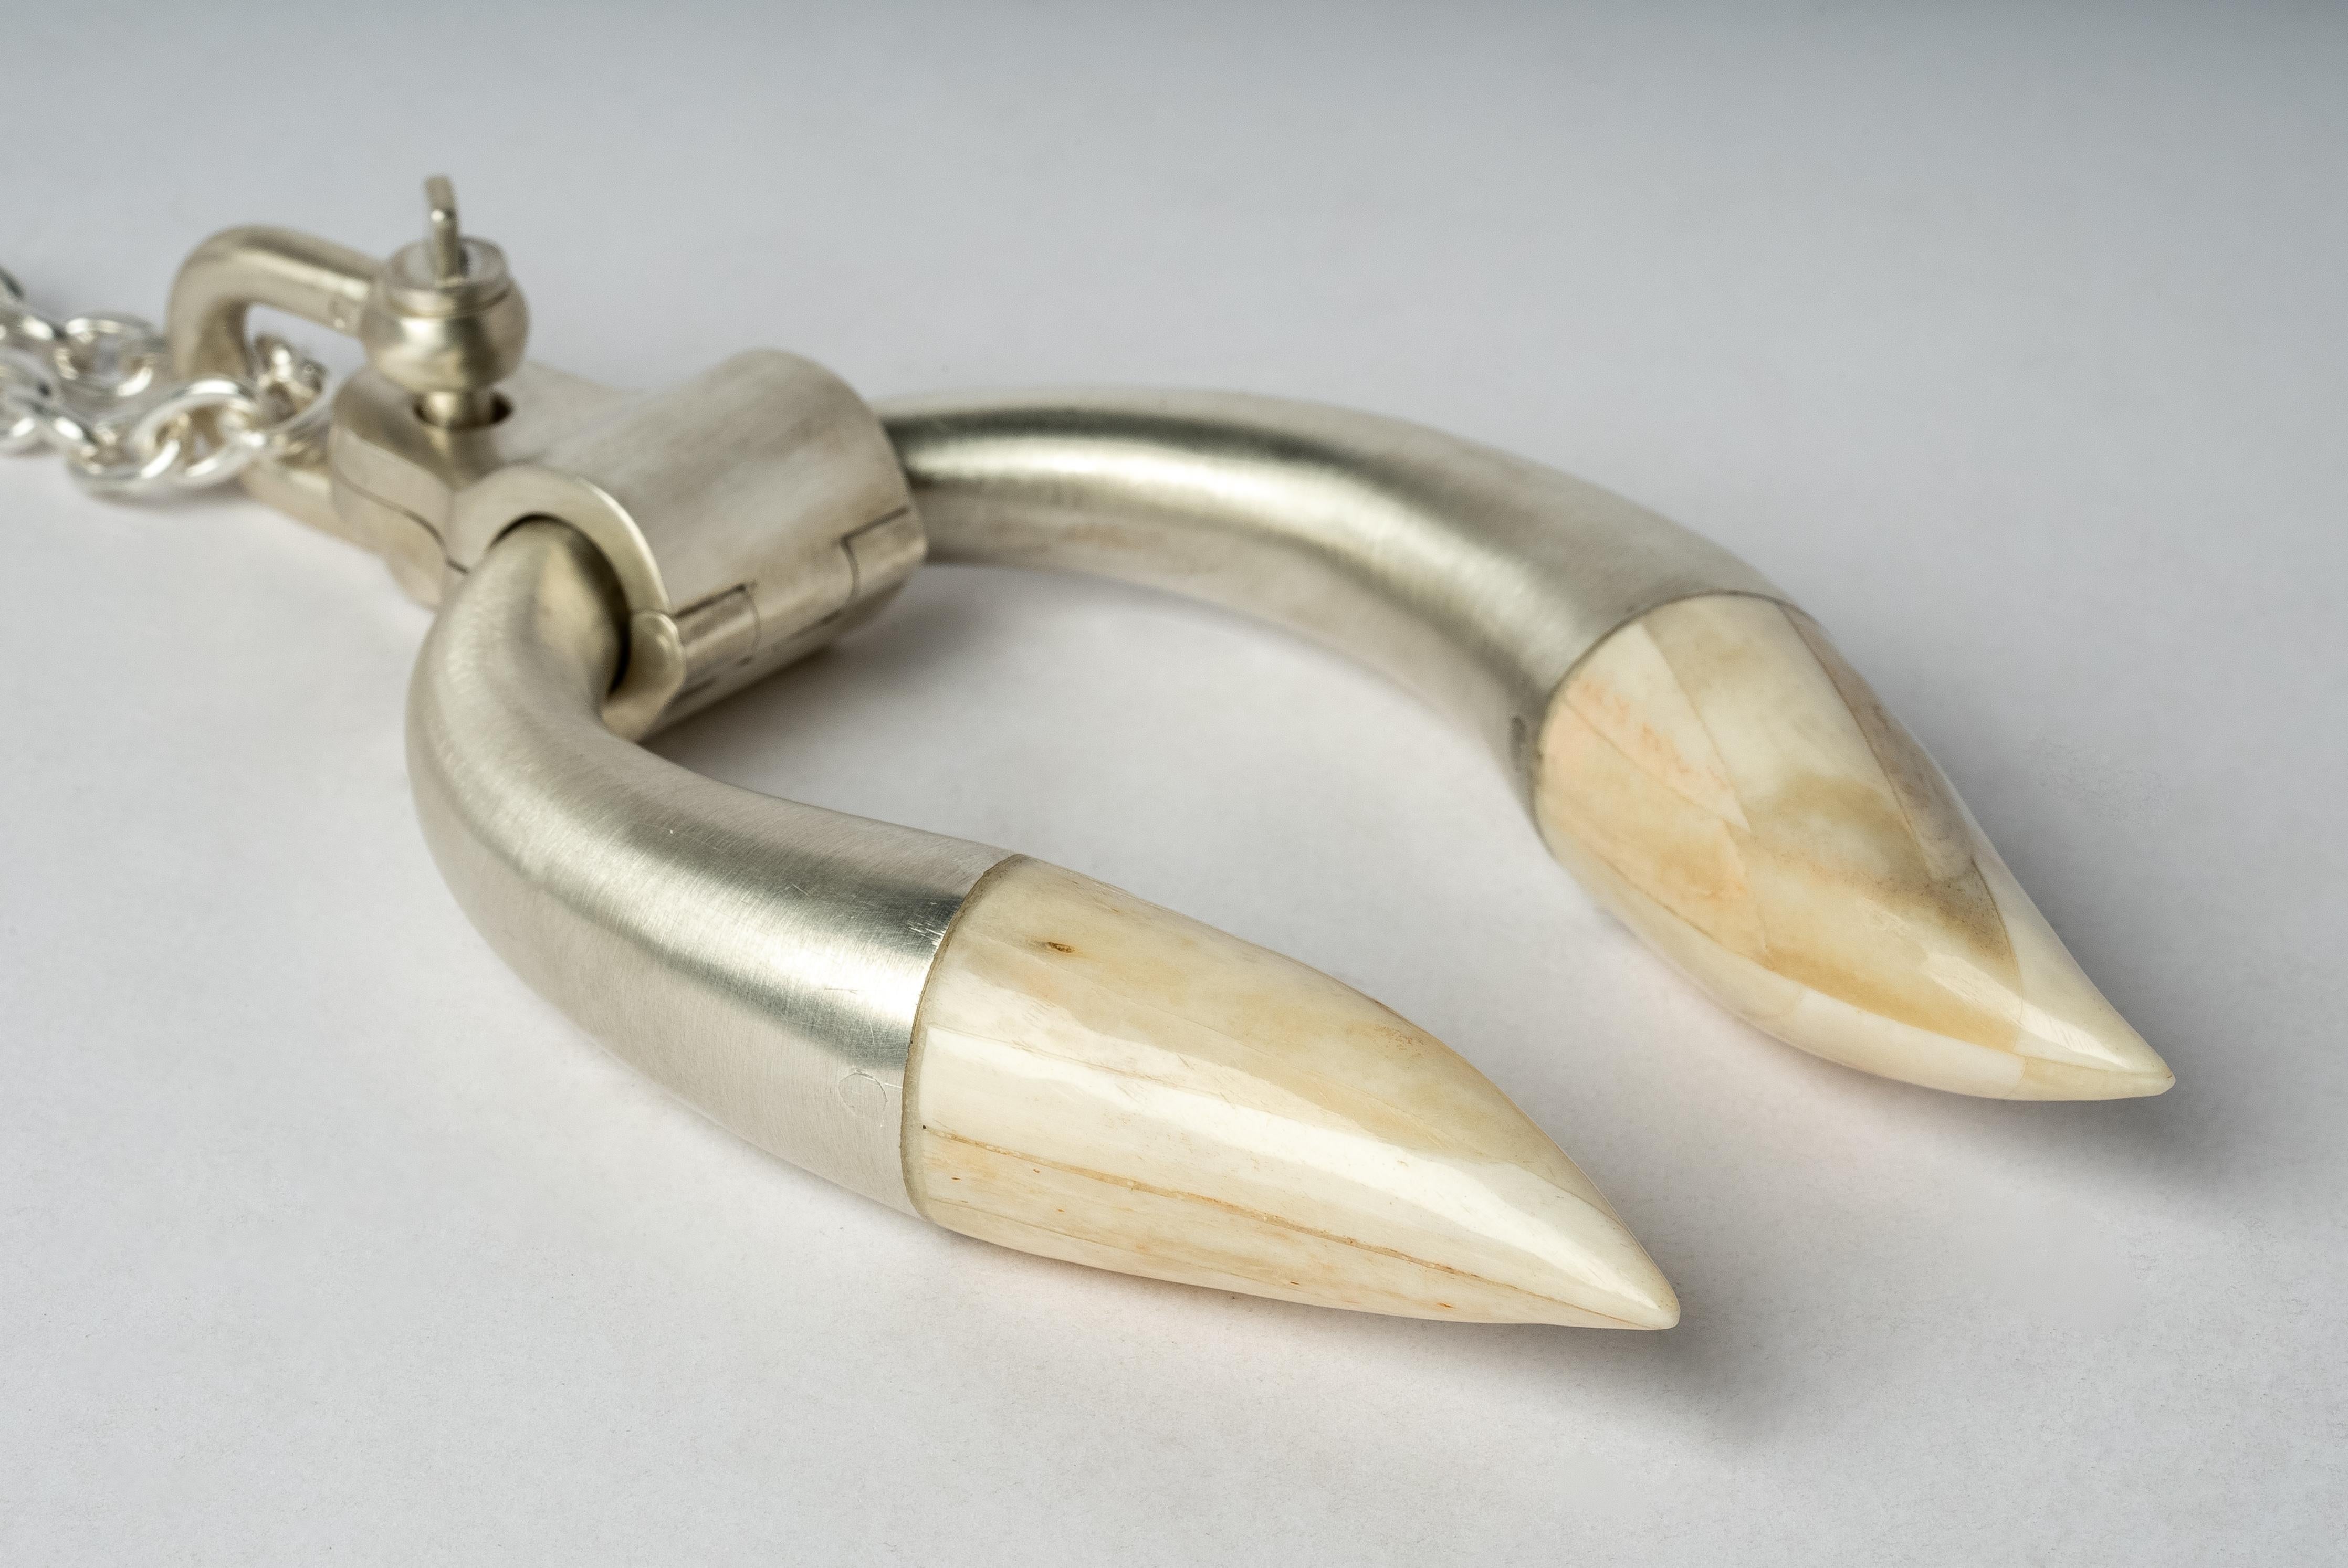 Anhänger-Halskette in Form eines Hathors aus Sterlingsilber mit Knochenspitze, an einer 74 cm langen Kette.